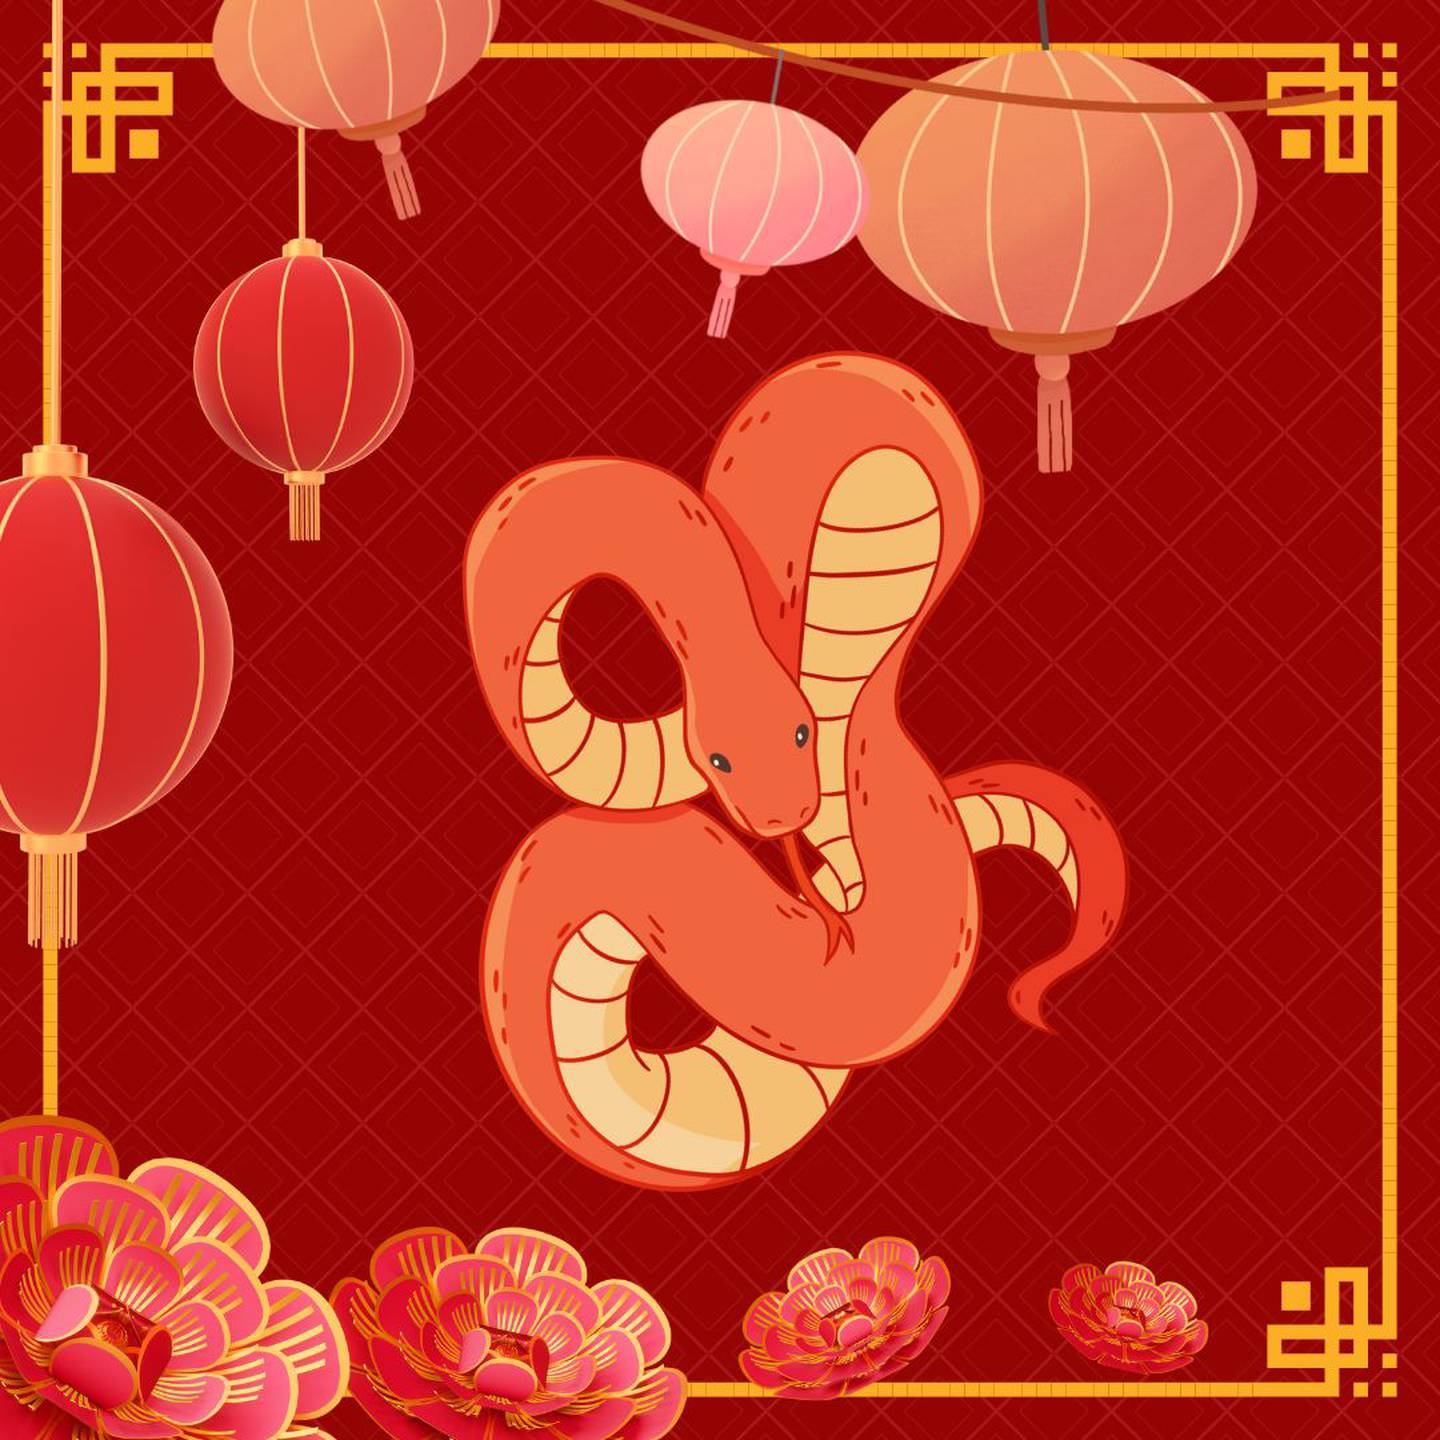 Caricatura de una serpiente sobre un fondo rojo con motivos orientales.